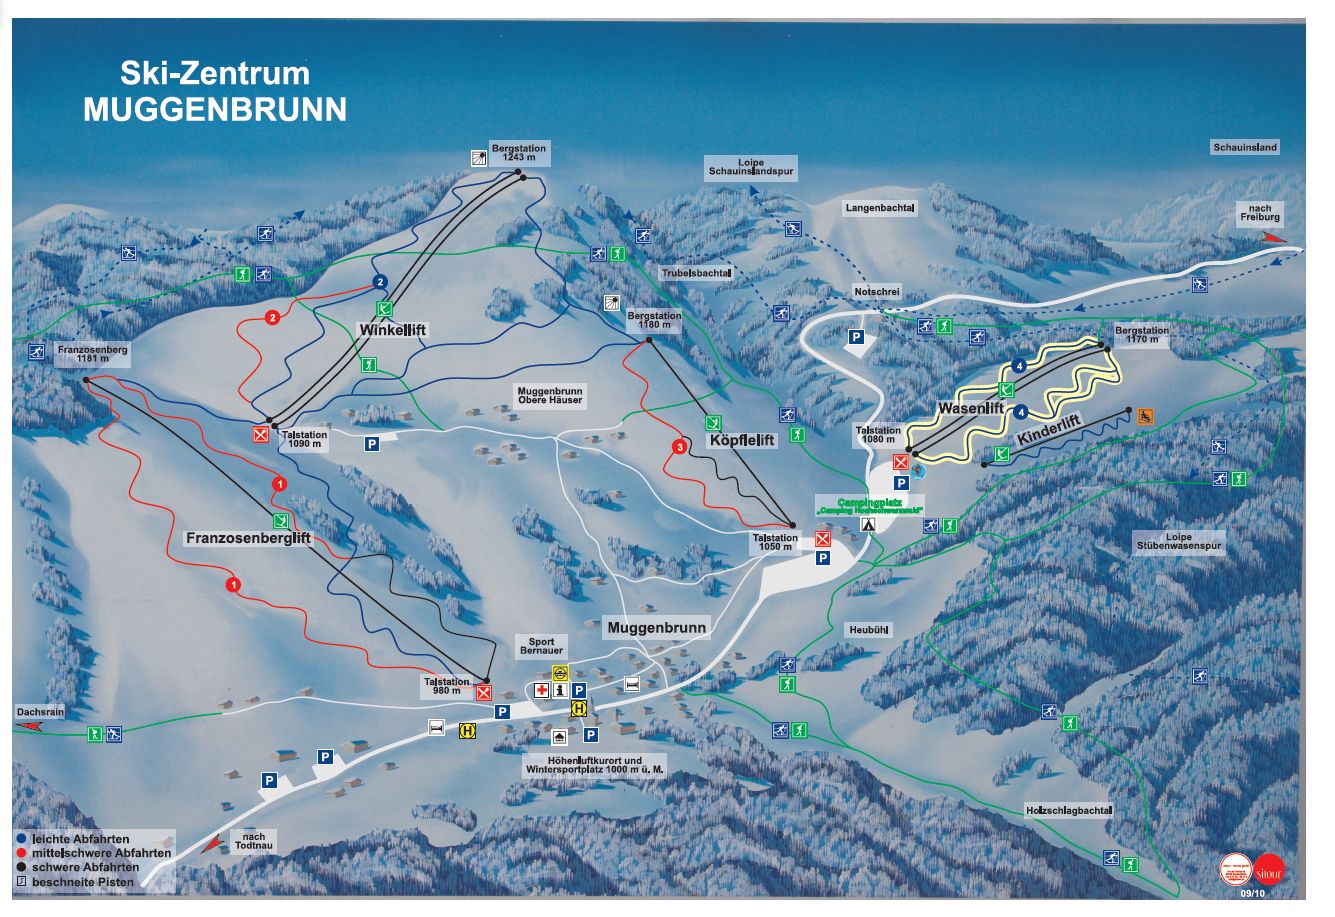 www.skizentrum-muggenbrunn.de